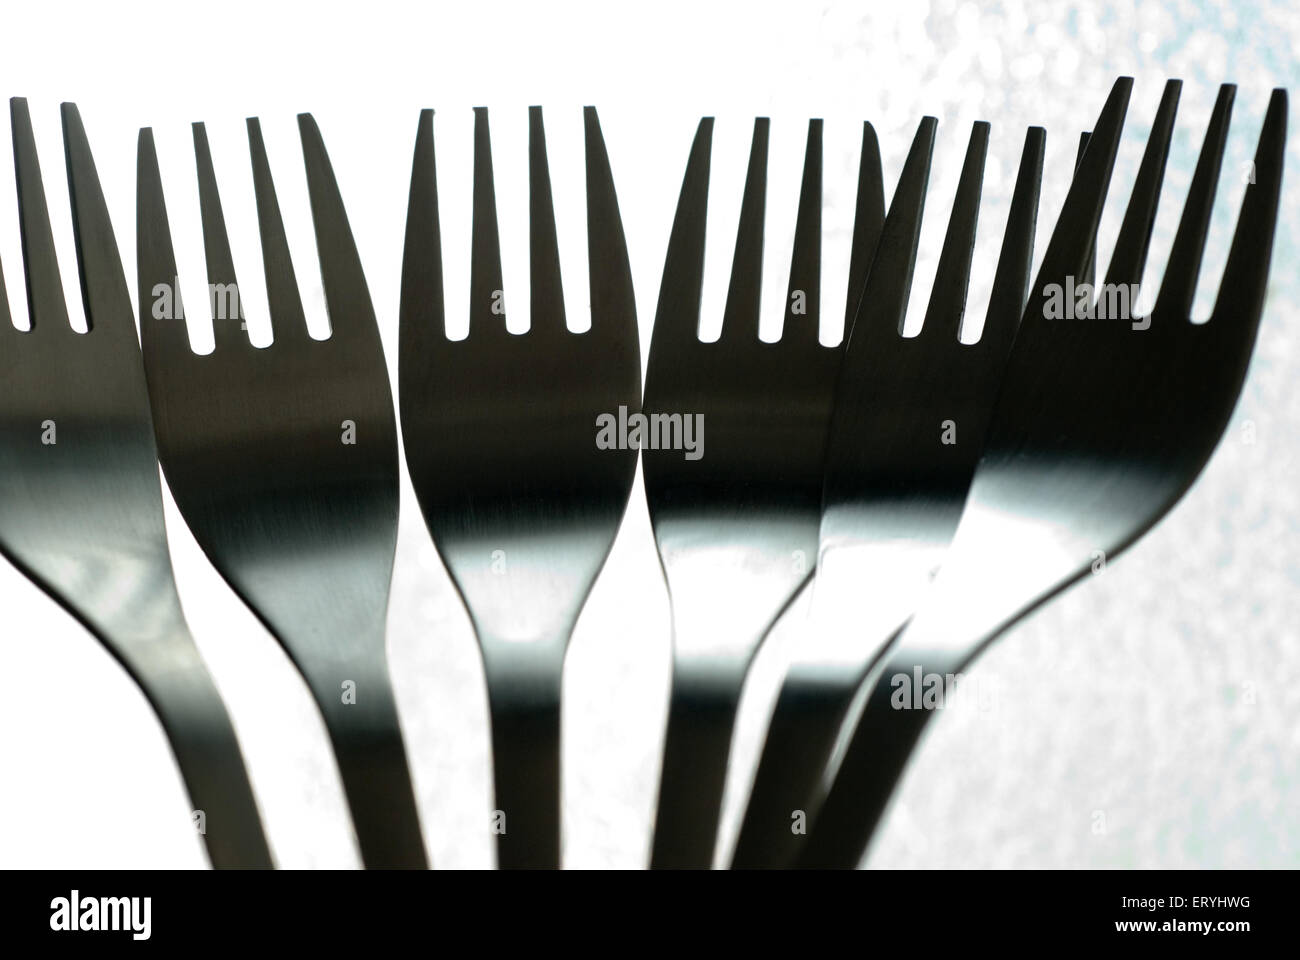 Tenedores, utensilio de cocina de acero inoxidable sobre fondo blanco Foto de stock